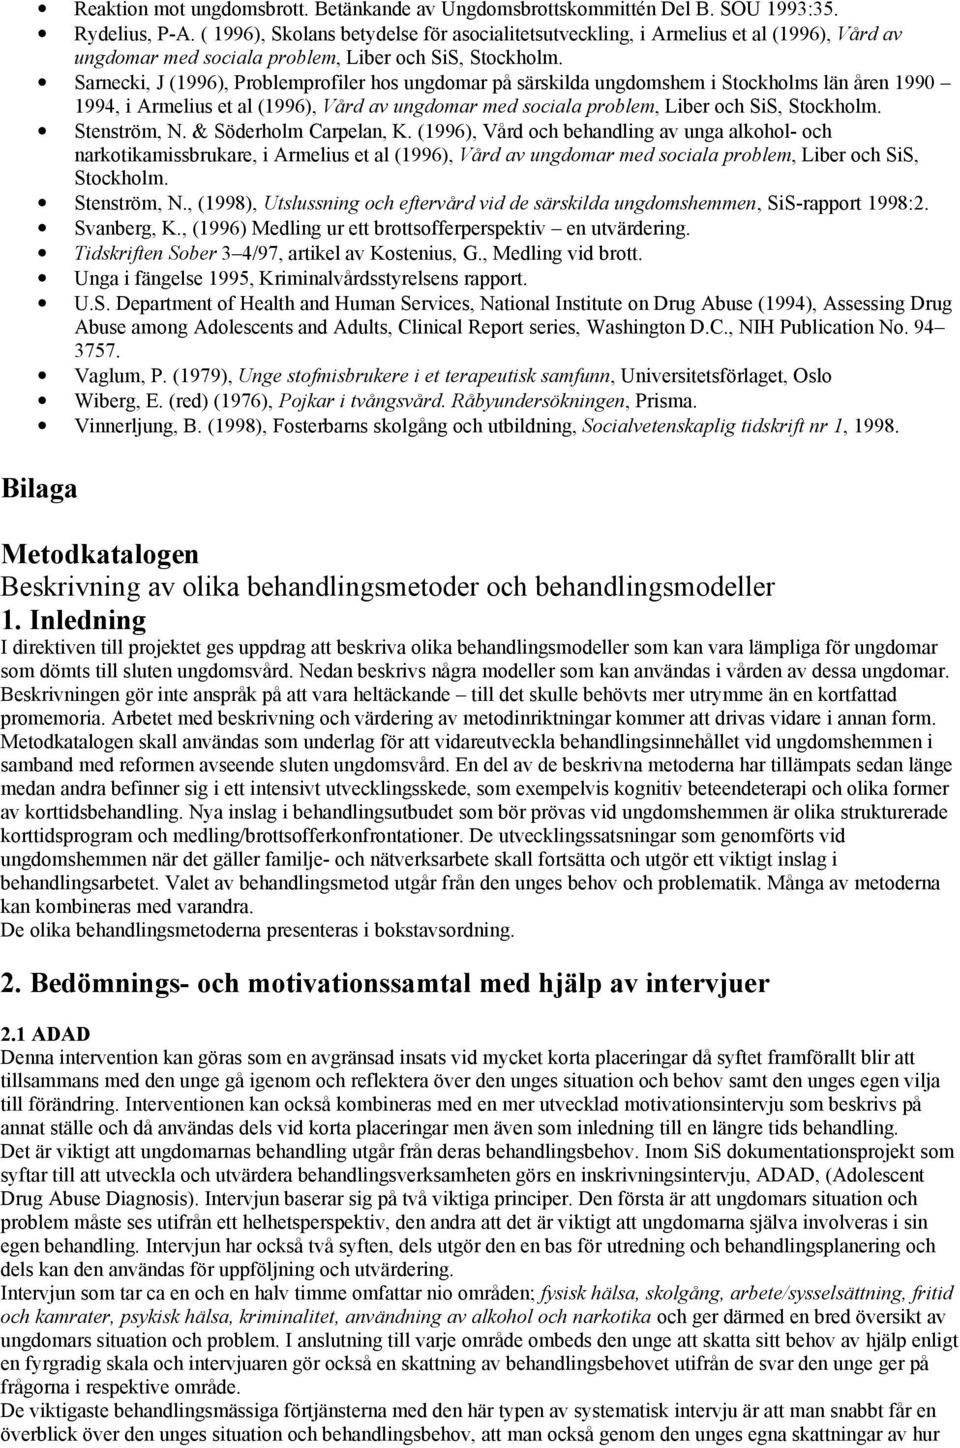 Sarnecki, J (1996), Problemprofiler hos ungdomar på särskilda ungdomshem i Stockholms län åren 1990 1994, i Armelius et al (1996), Vård av ungdomar med sociala problem, Liber och SiS, Stockholm.